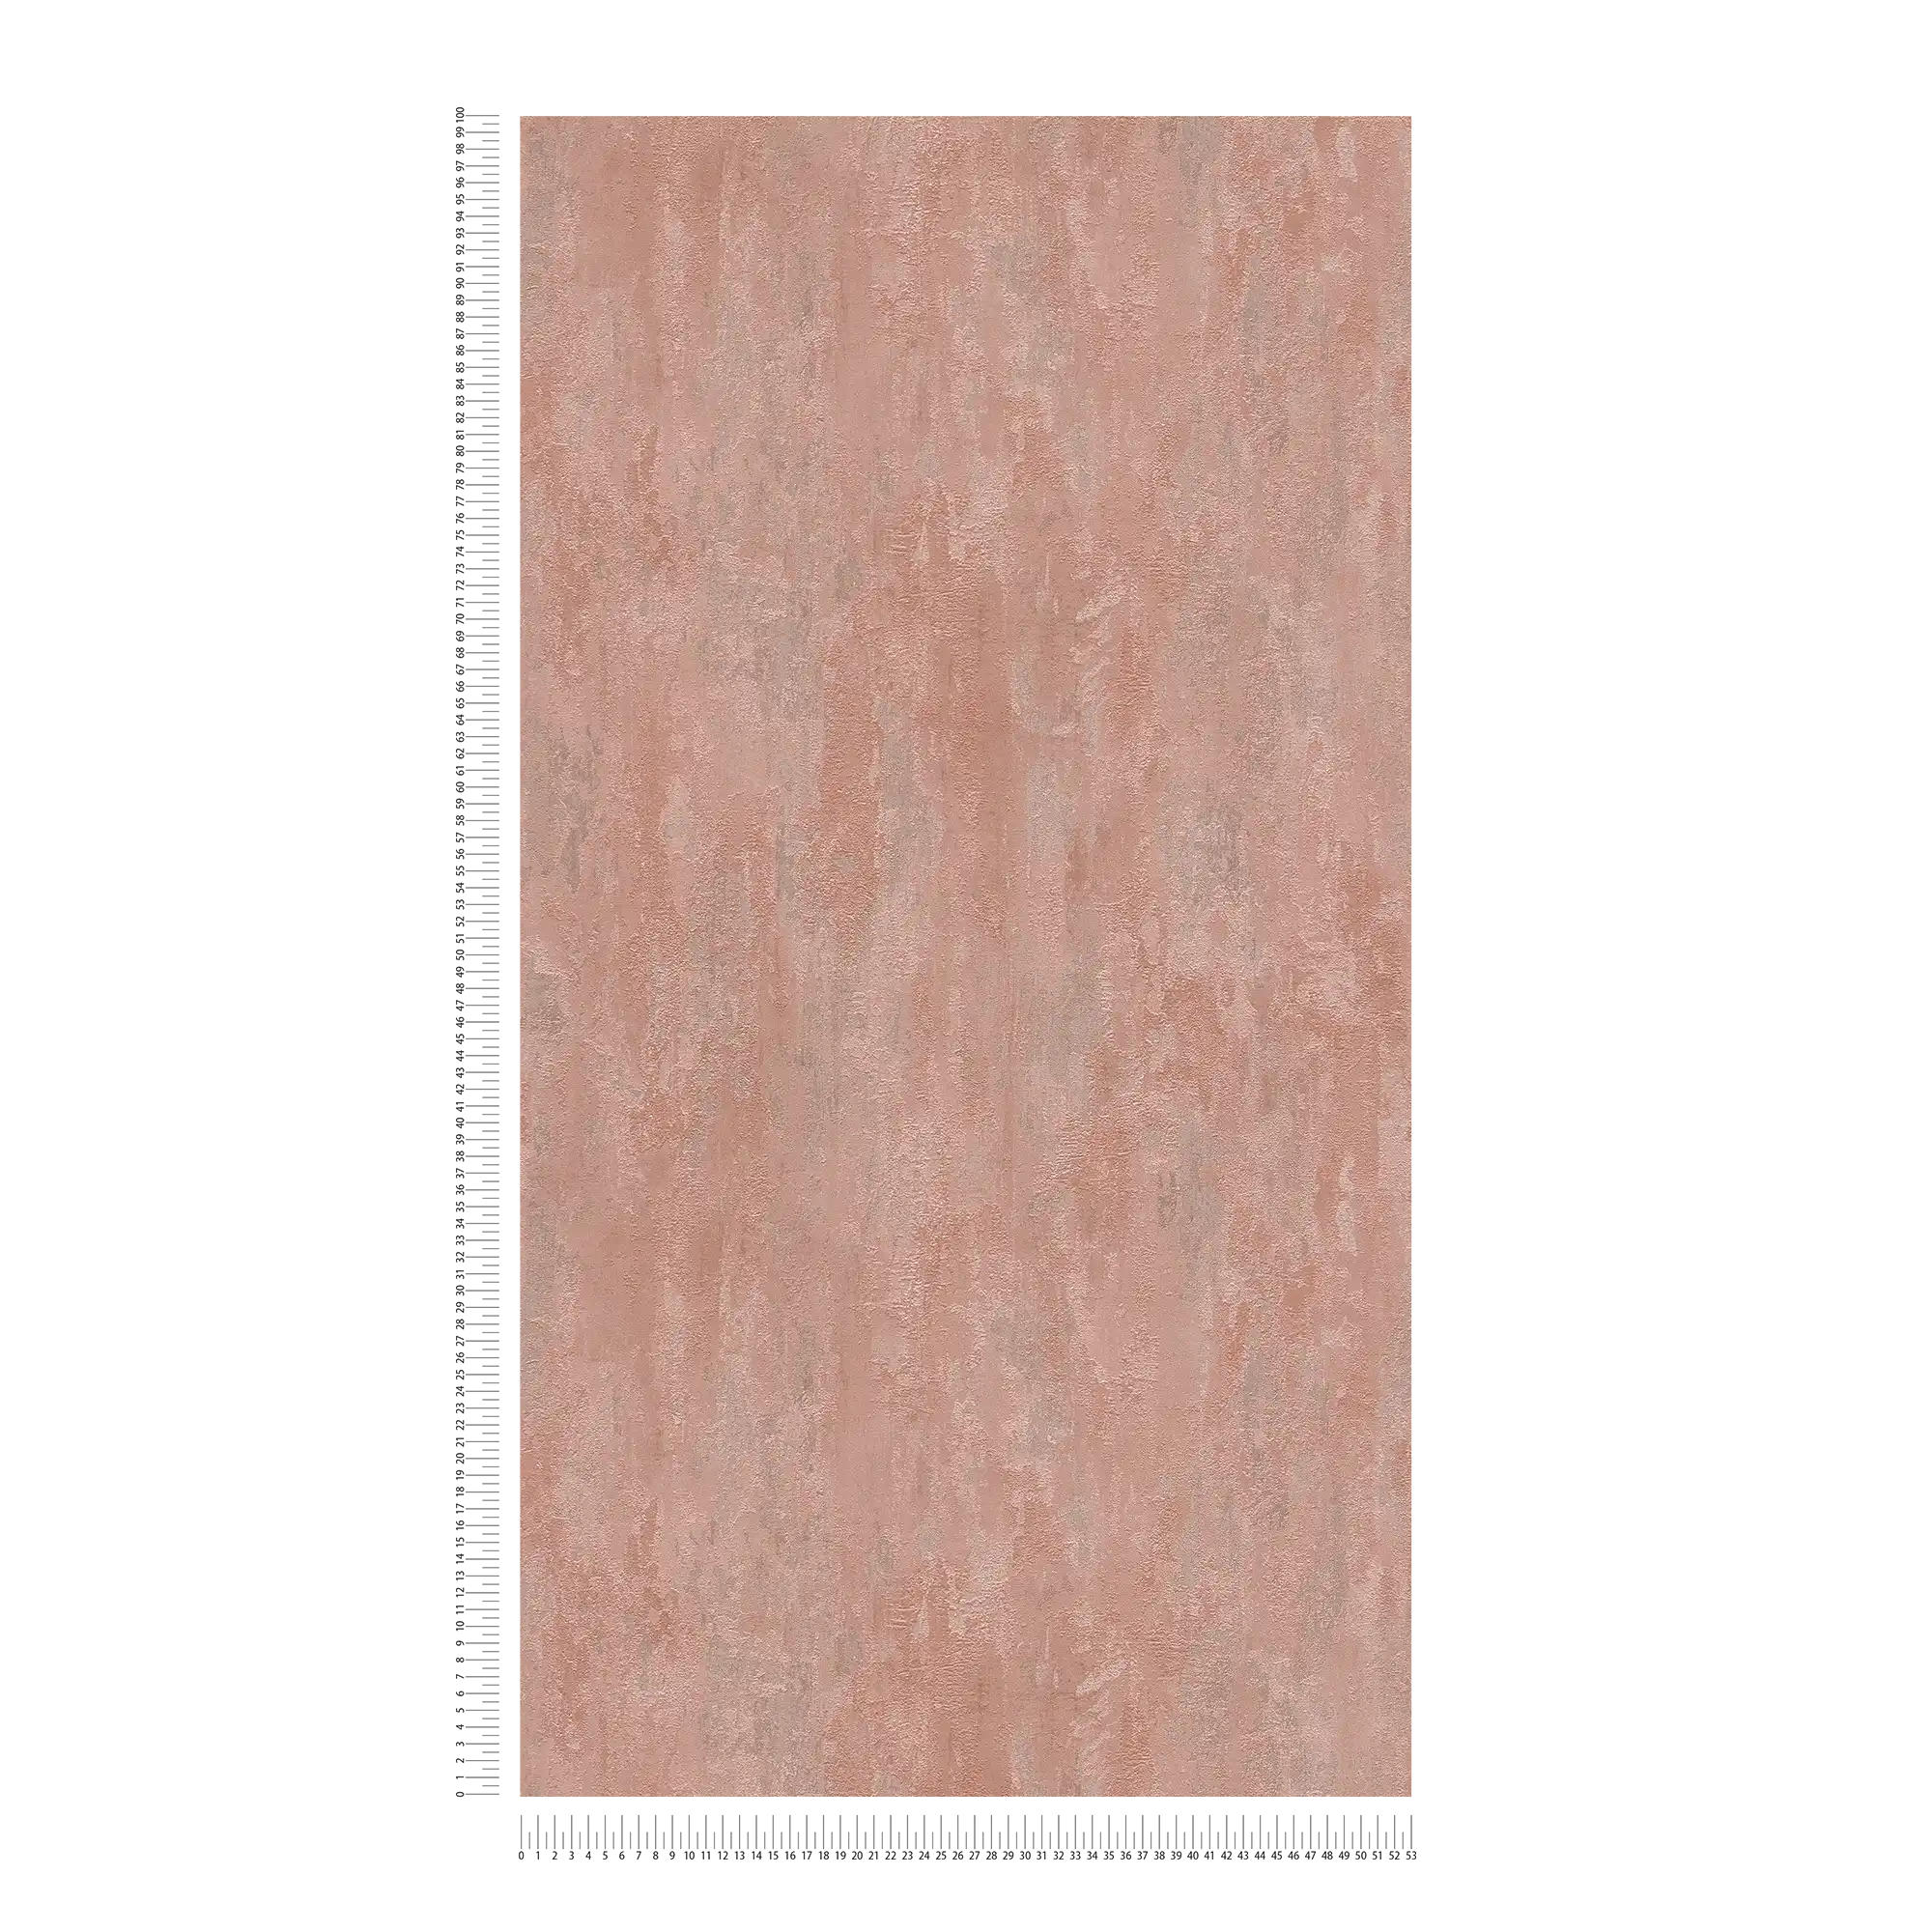             Carta da parati in stile industriale con effetto texture - metallizzata, rosa
        